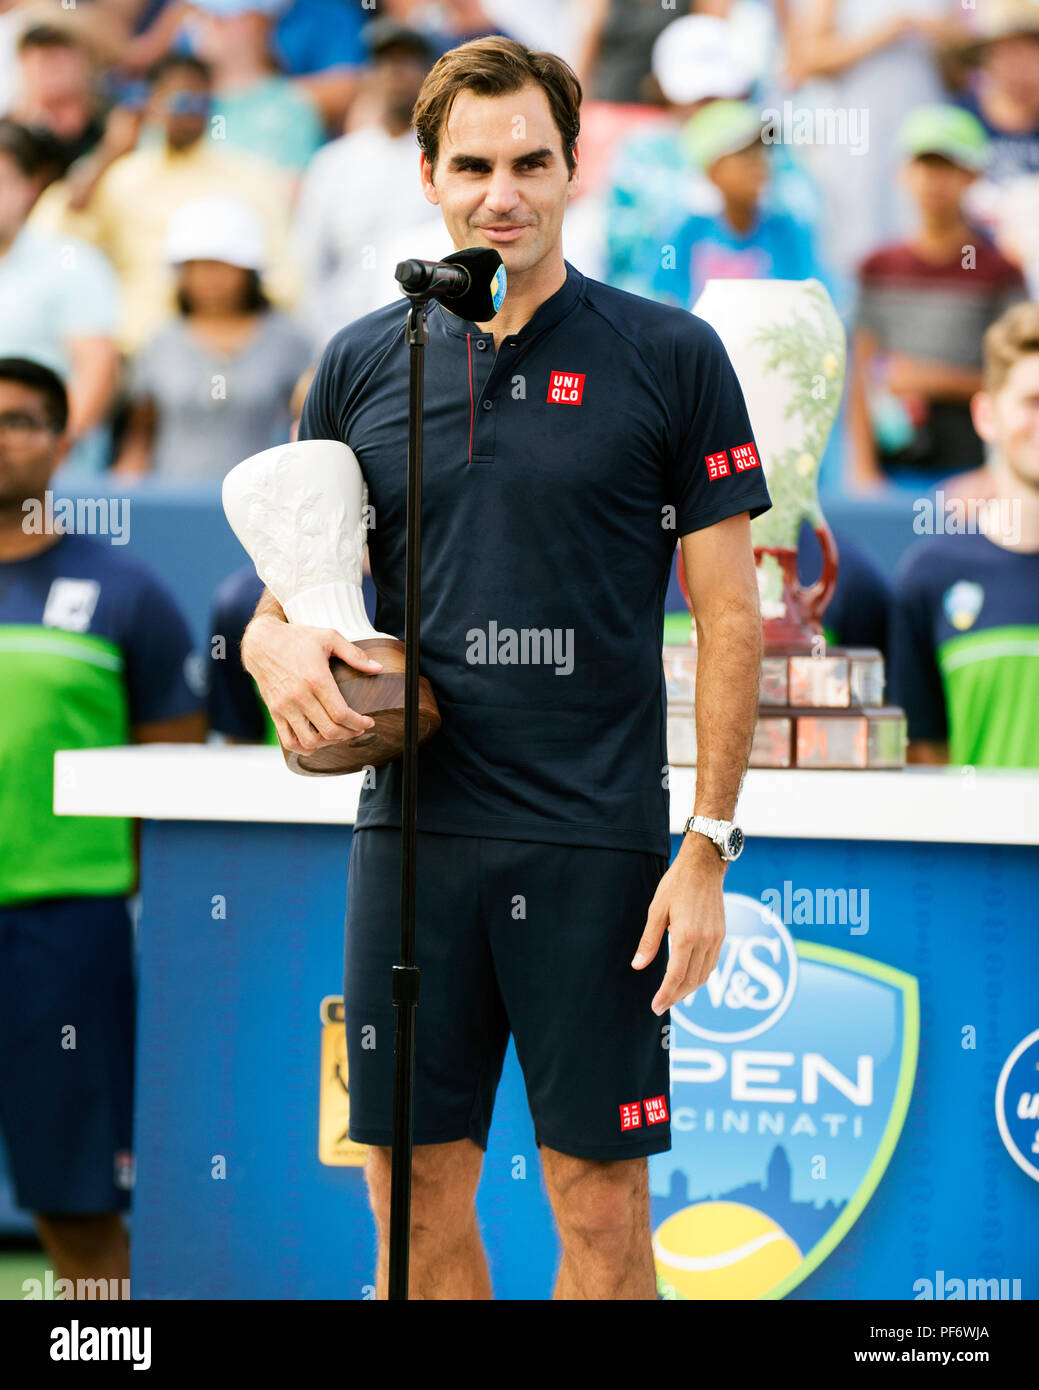 Mason, Ohio, USA. 19 août 2018 : Roger Federer (SUI) au cours de la cérémonie de remise des prix au sud de l'Ouest Ouvrir à Mason, Ohio, USA. Brent Clark/Alamy Live News Banque D'Images